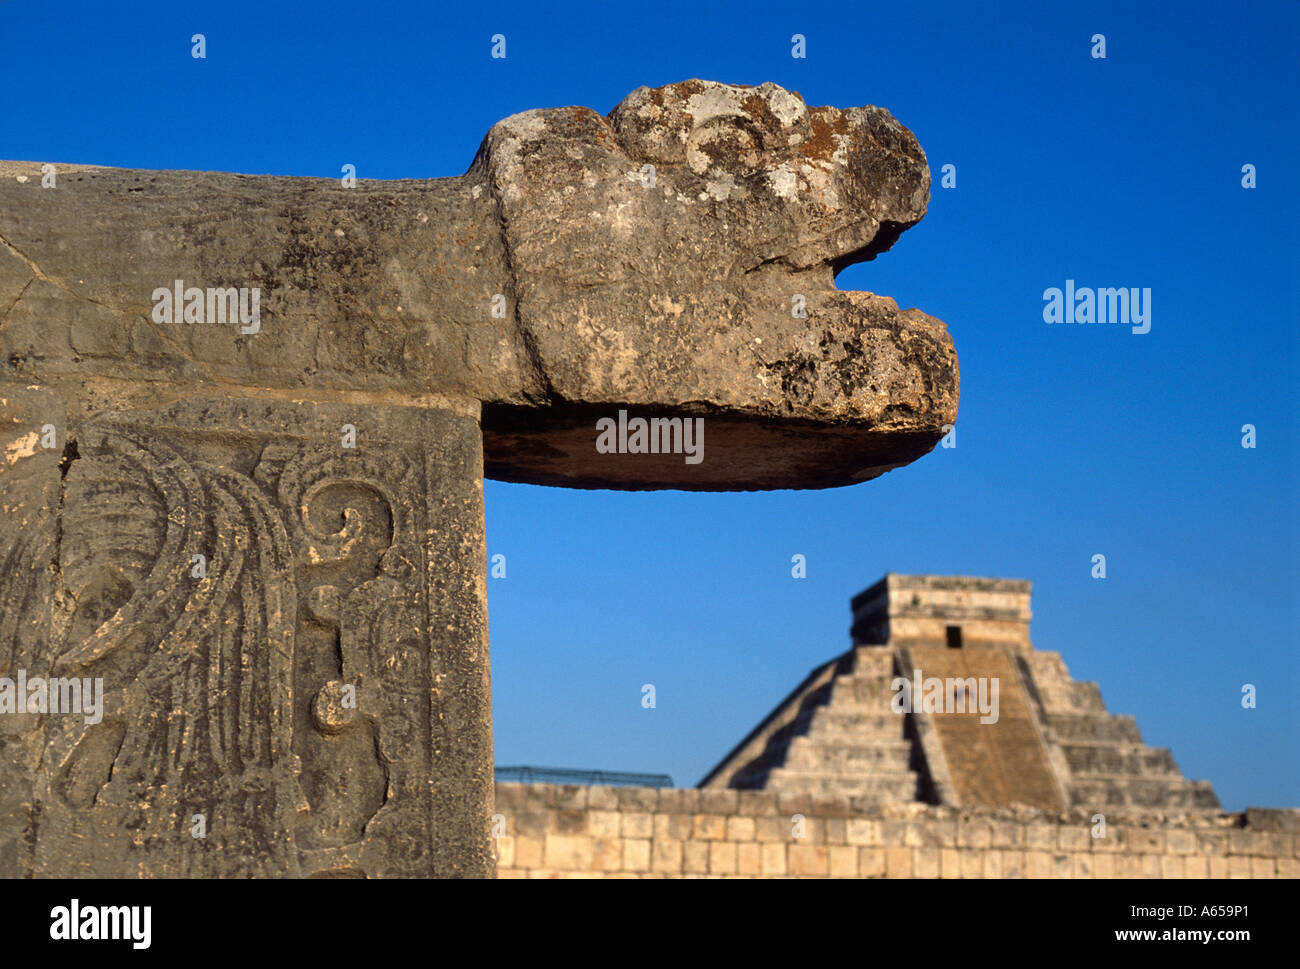 Sculpture de la tête de serpent et El Castillo pyramide maya, Chichen Itza, Yucatan, Mexique Banque D'Images